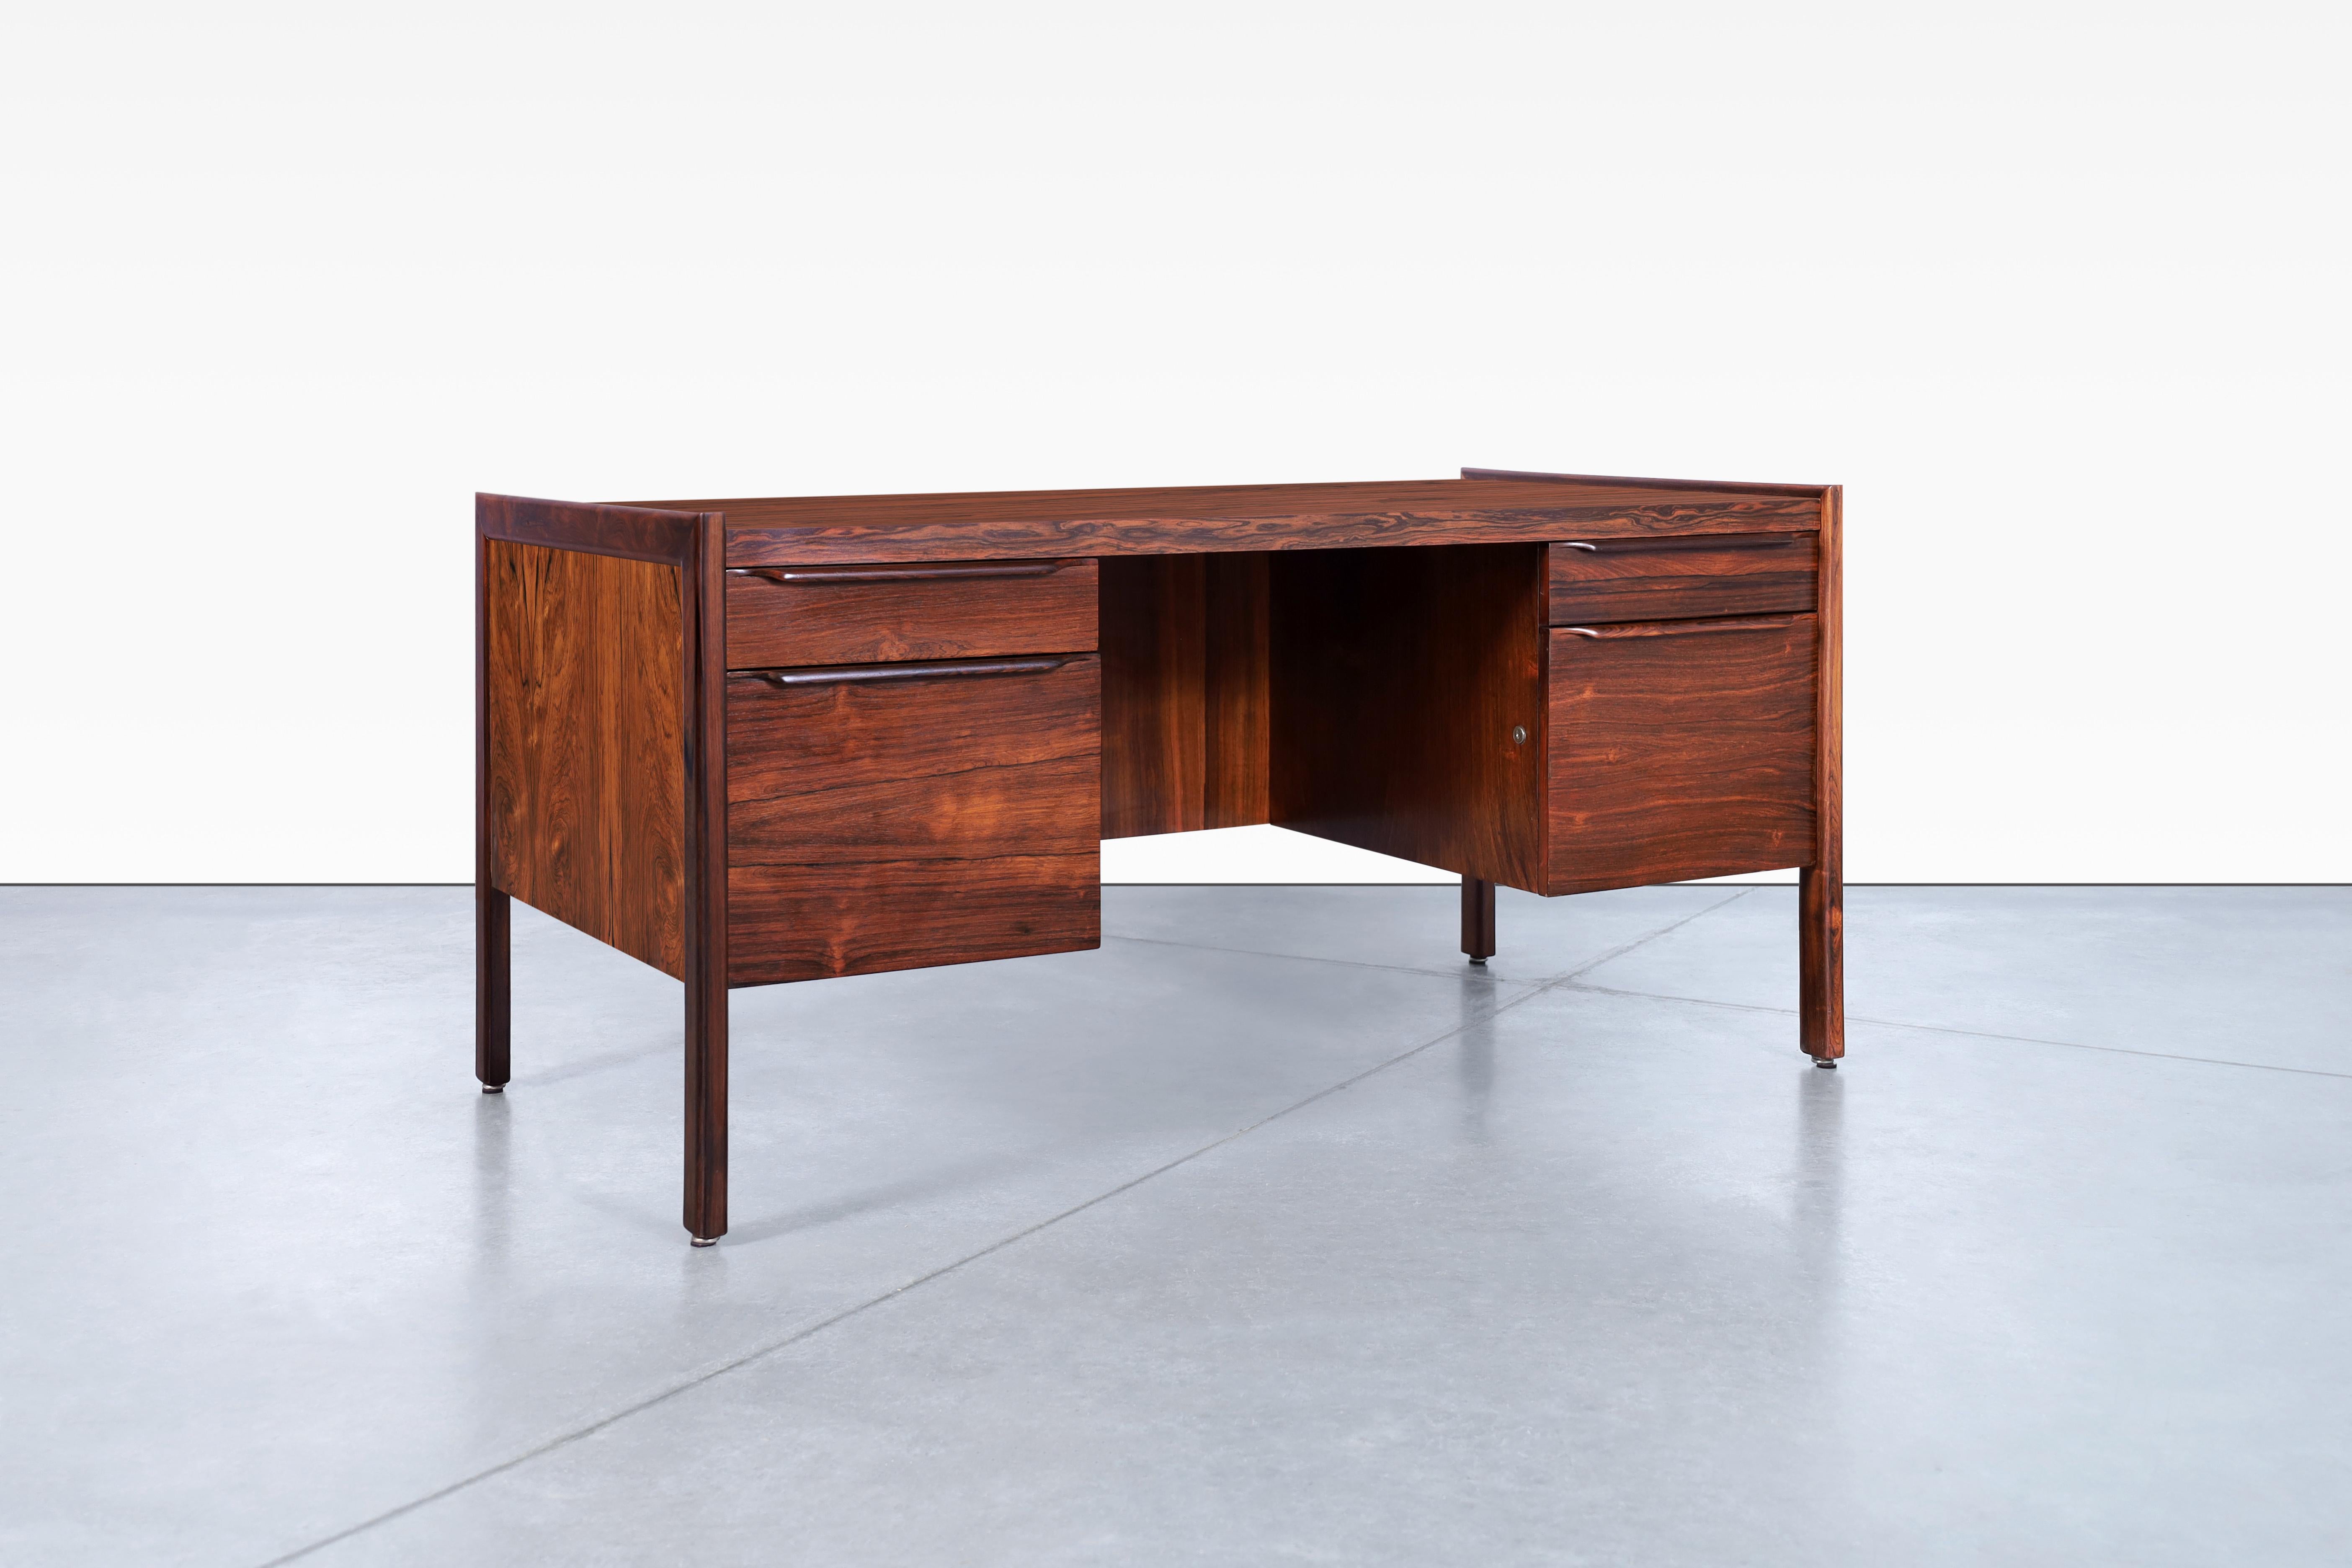 Fabelhafter moderner dänischer Schreibtisch aus Palisanderholz, entworfen in Dänemark, ca. 1960er Jahre. Der Schreibtisch aus brasilianischem Palisanderholz wurde sorgfältig restauriert, um seine natürliche Schönheit und unglaubliche Maserung zum